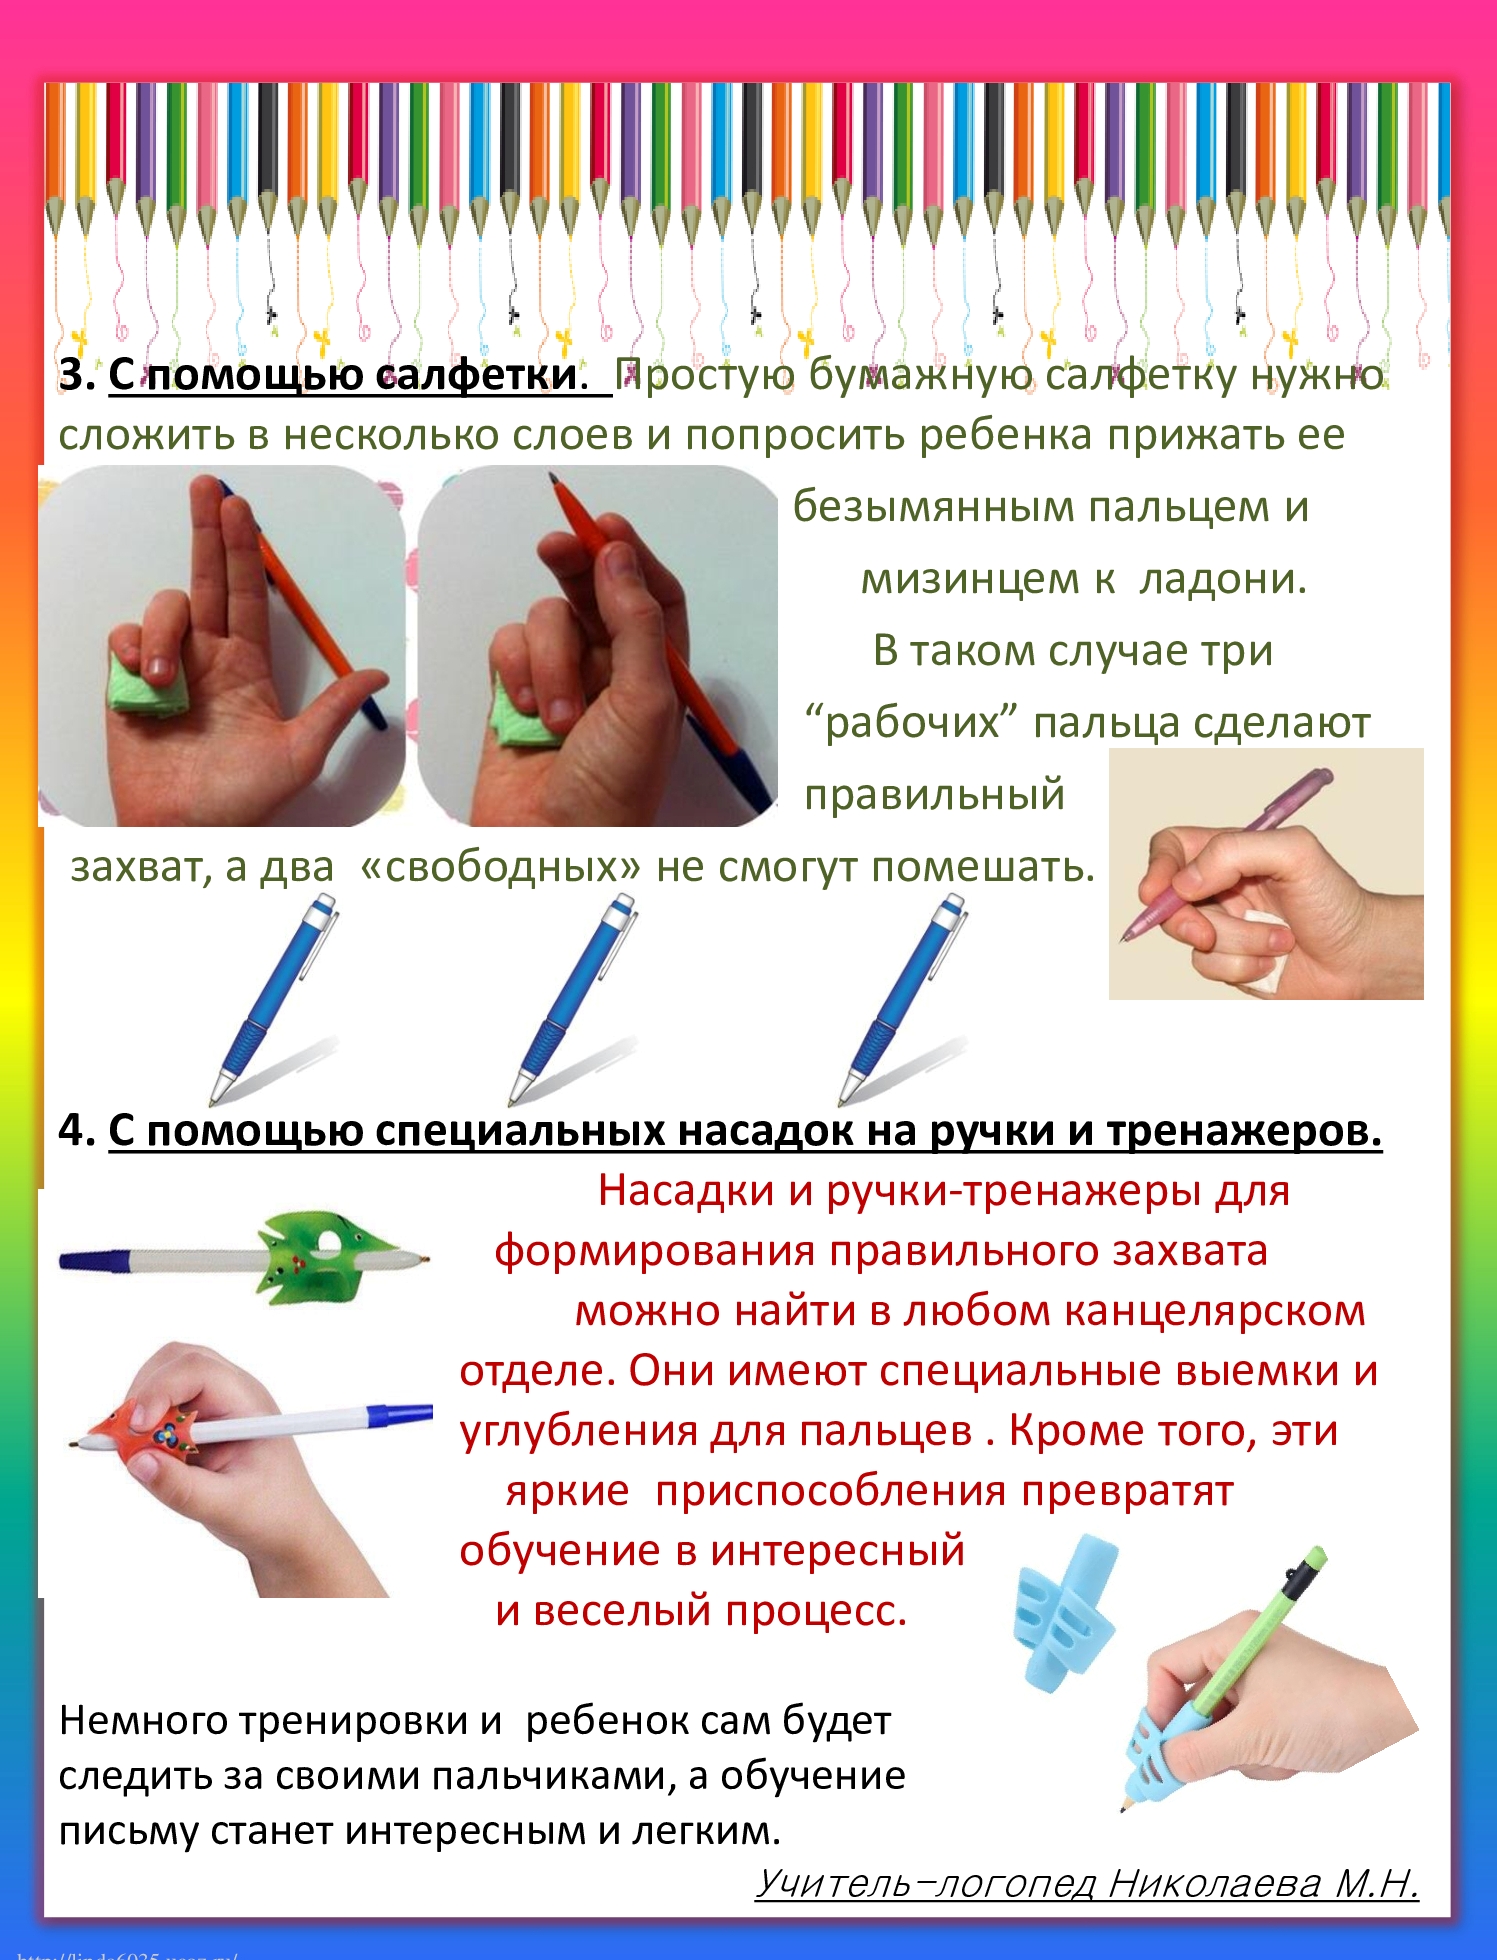 Научить ребенка правильно держать карандаш. Как научить ребёнка правильно держать ручку при письме. Правильная постановка руки при письме для детей. Как научить ребёнка правильно держать карандаш в 4 года. Как правильнодержаьь руску.